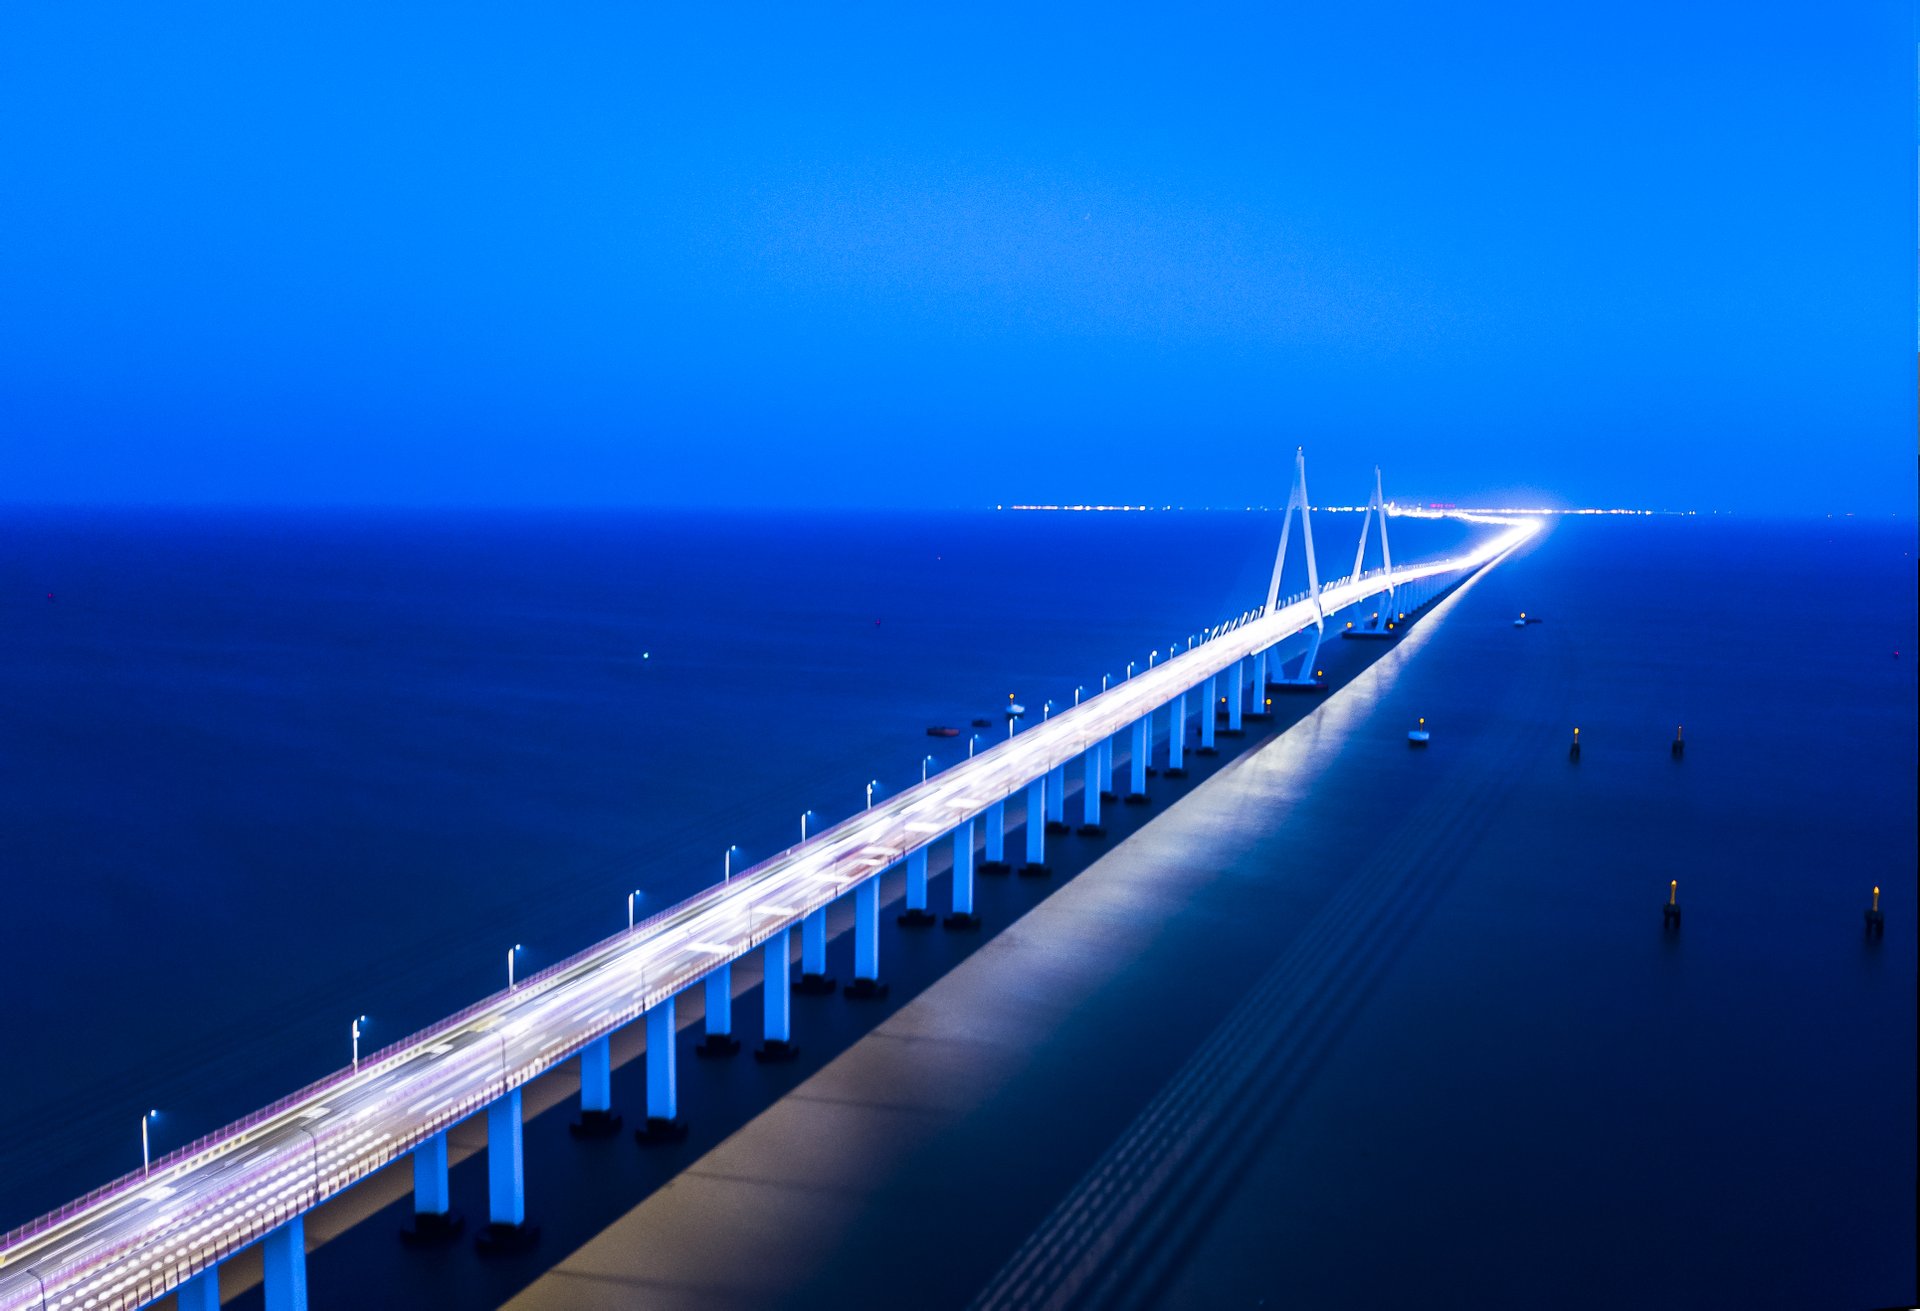 杭州灣跨海大橋呈西北至東南方向布置